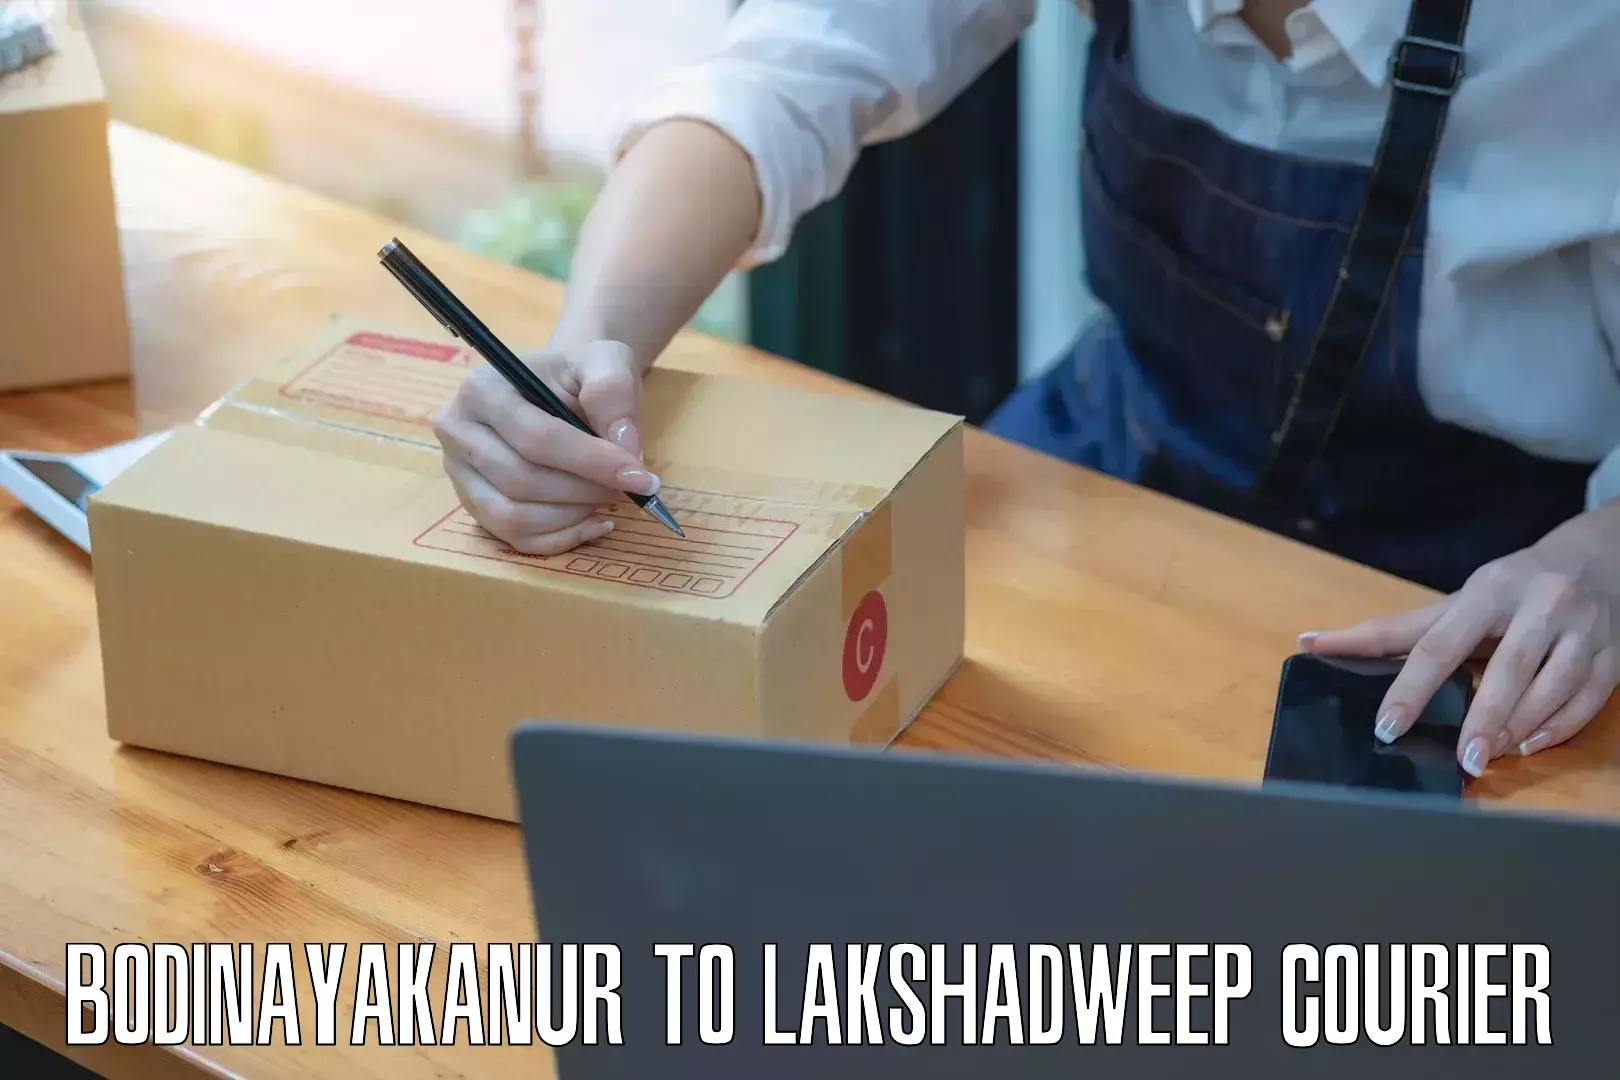 Professional courier handling Bodinayakanur to Lakshadweep